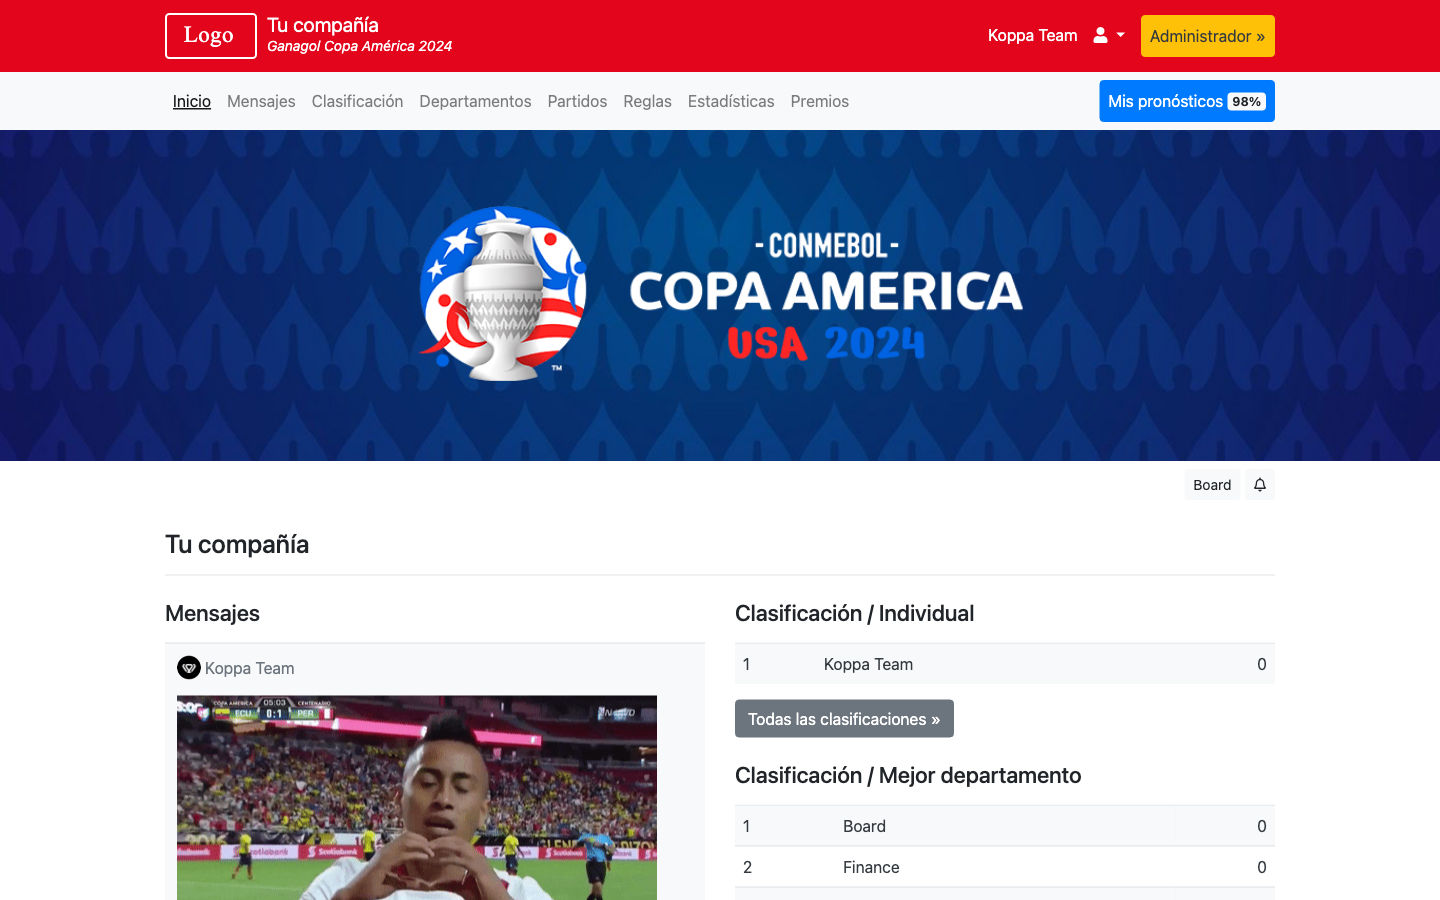 Ganagol Copa América 2024 Home